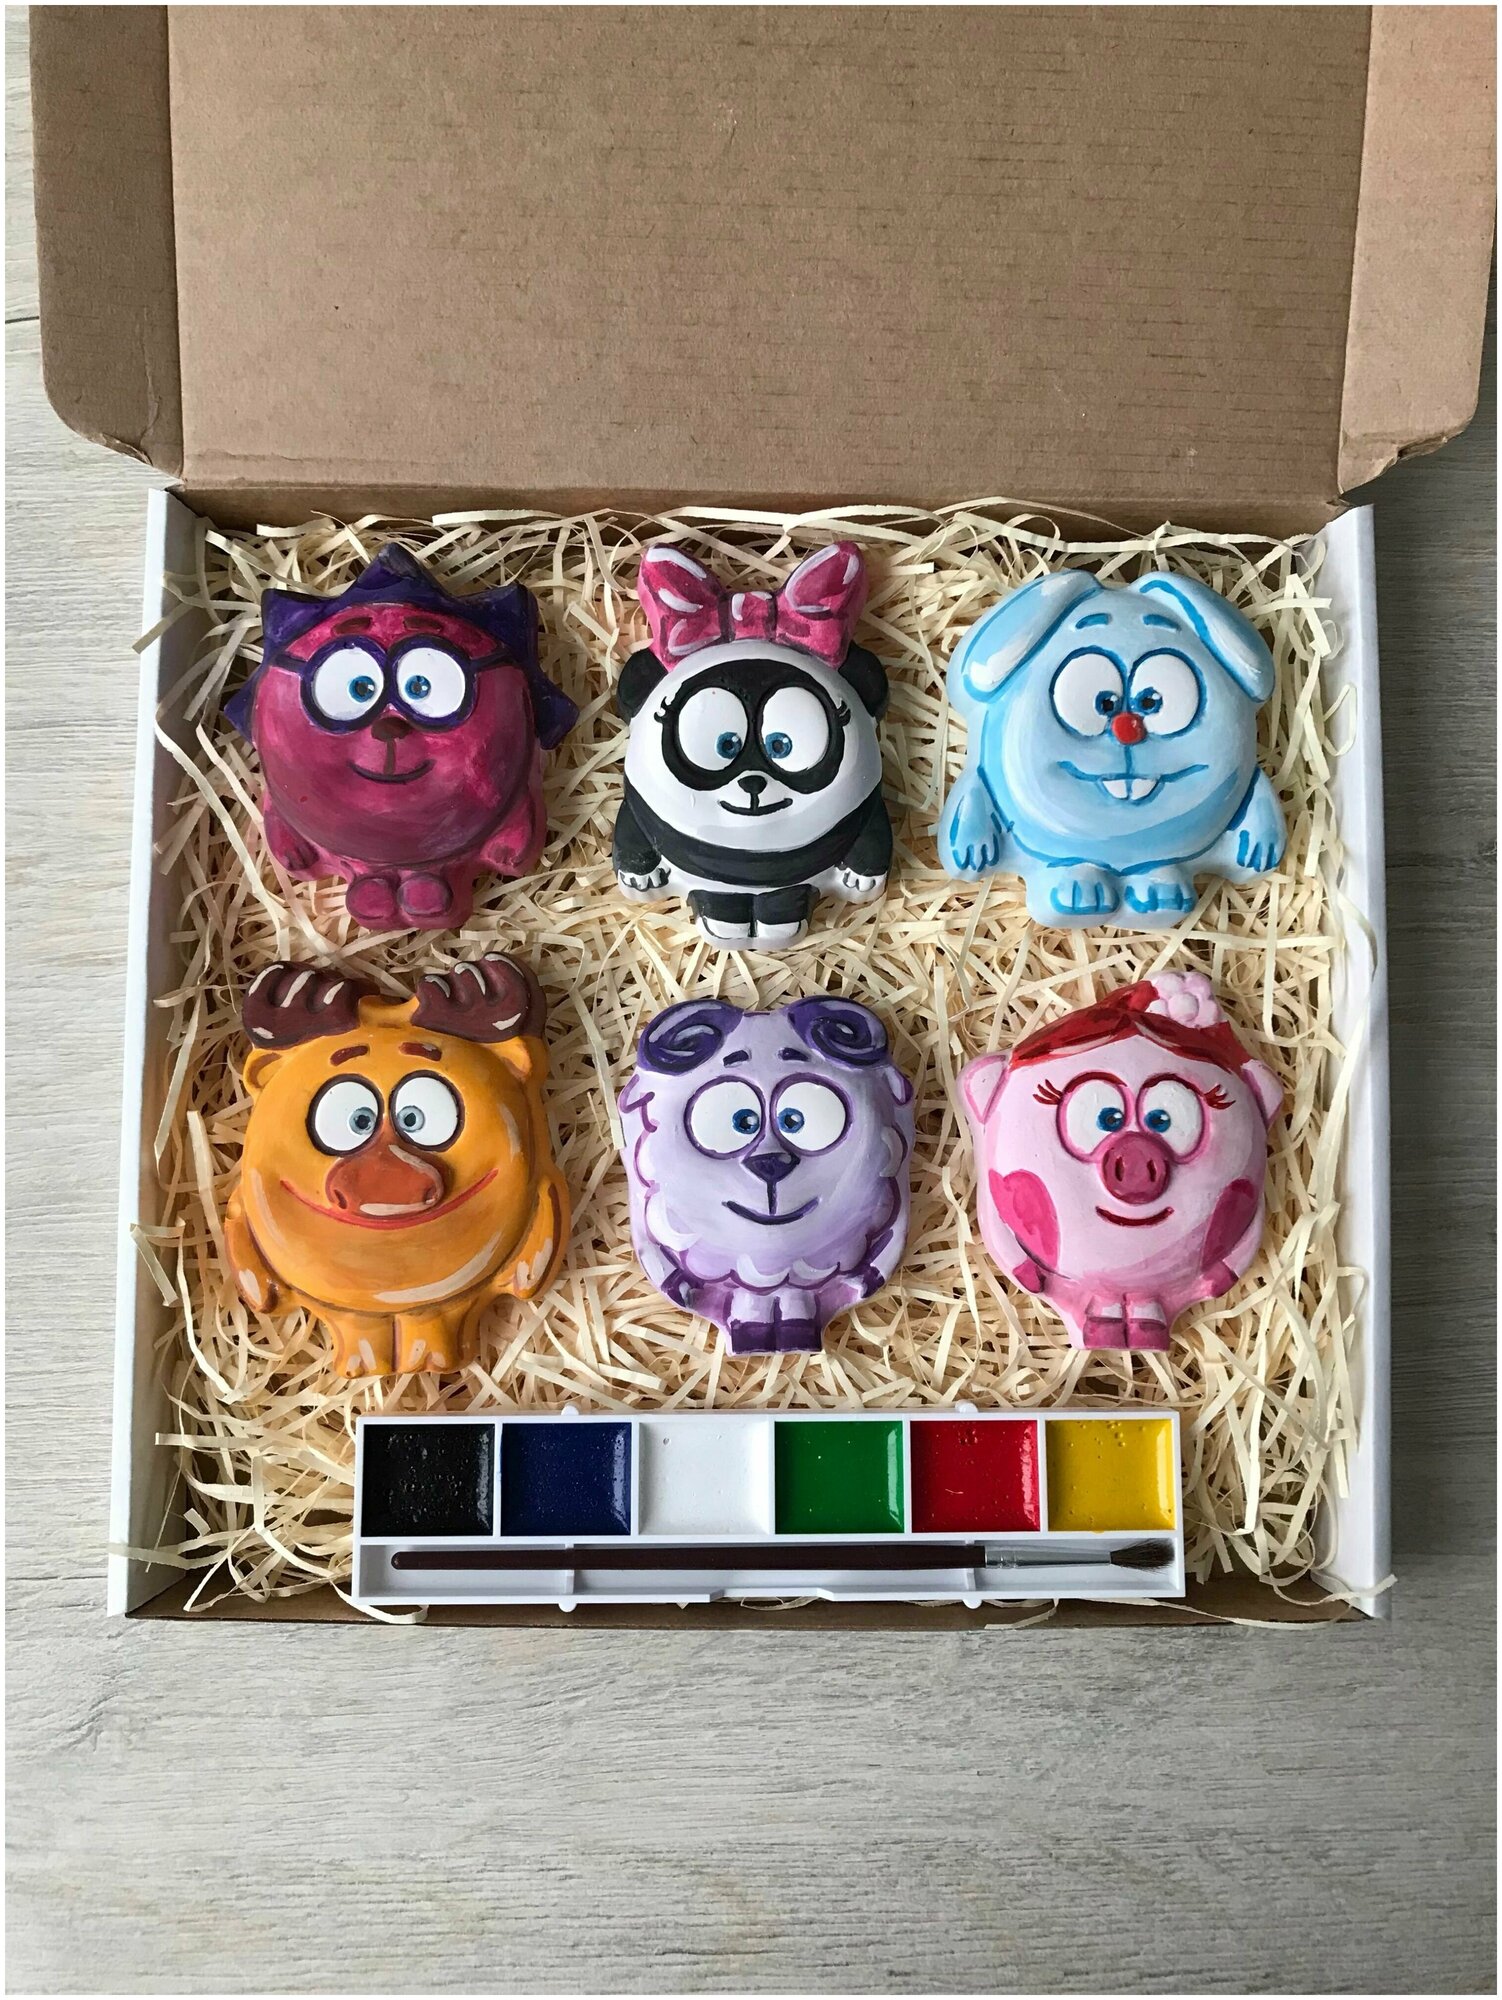 Интерактивная детская игрушка для раскрашивания + кролик В подарок / многоразовая объемная раскраска 7 шт, краски, кисточка